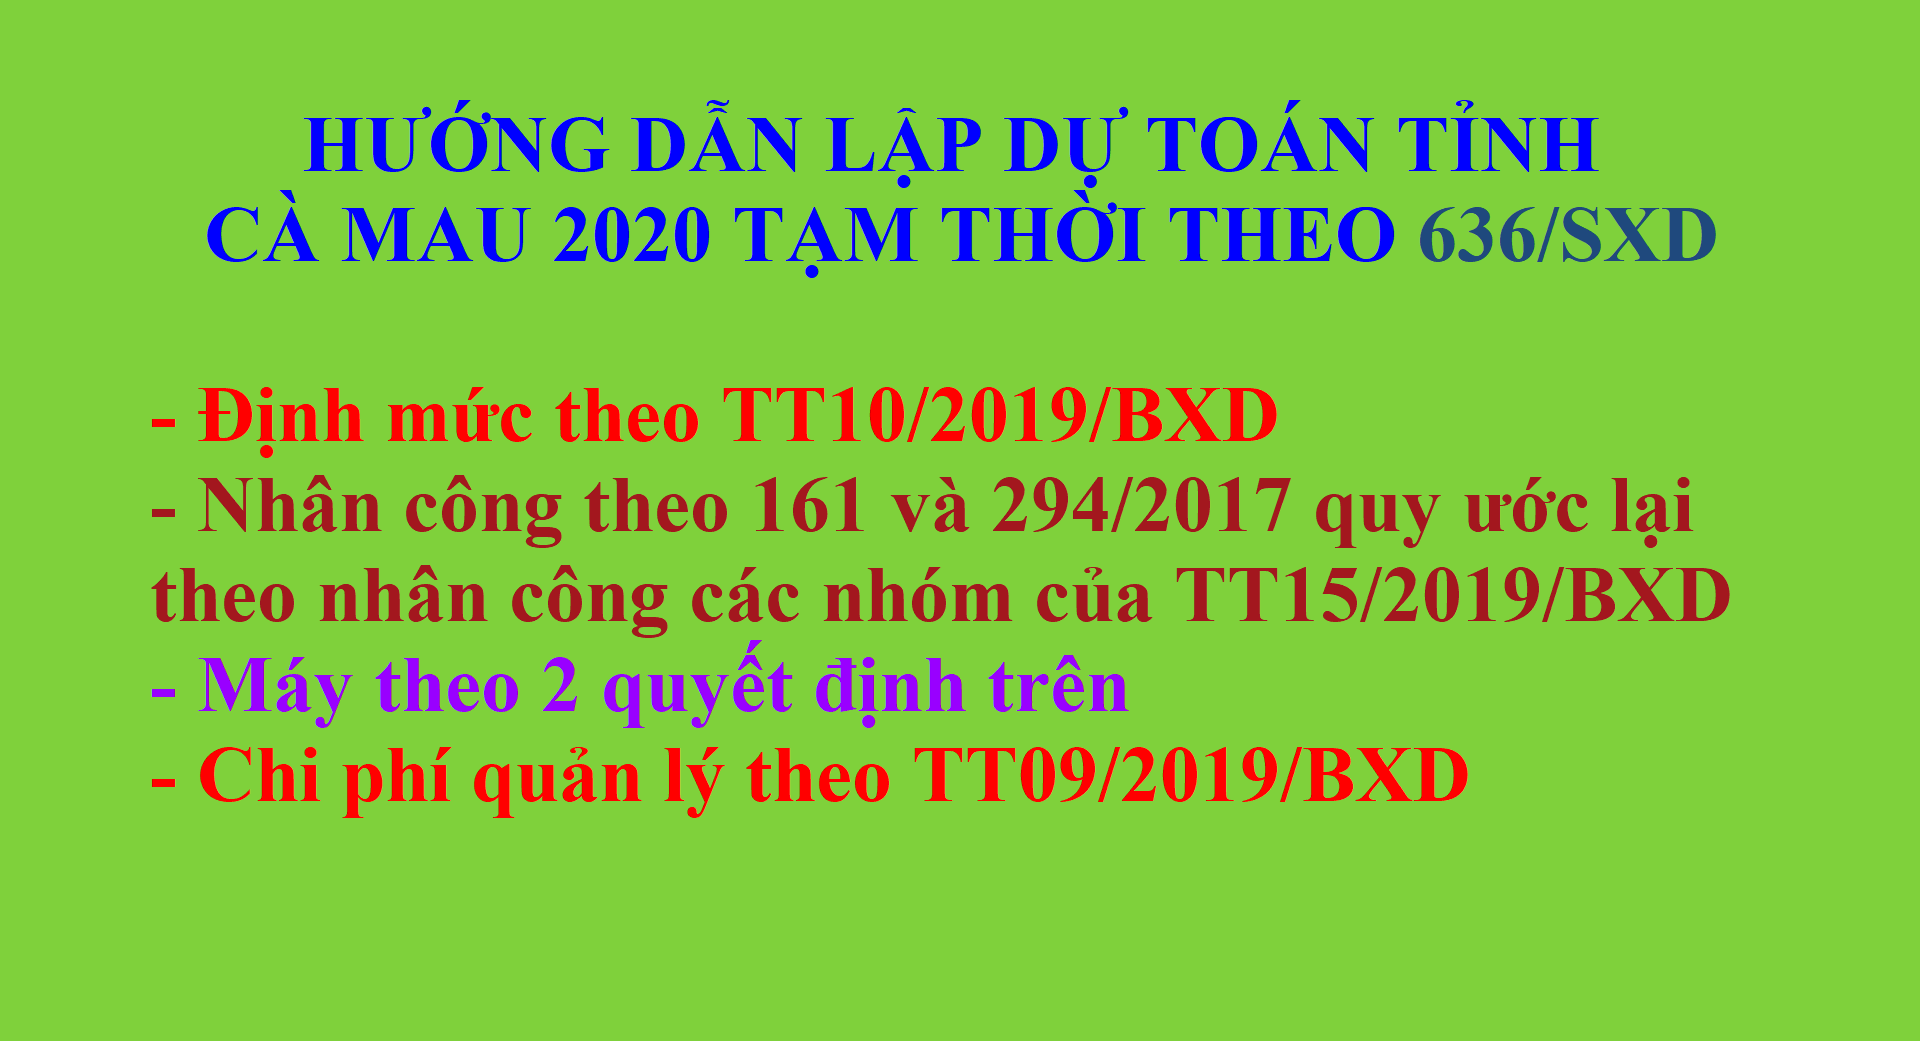 Hướng dẫn lập dự toán Cà Mau 2020 theo văn bản 636/SXD-QLXD ngày 12/03/2020 tạm thời